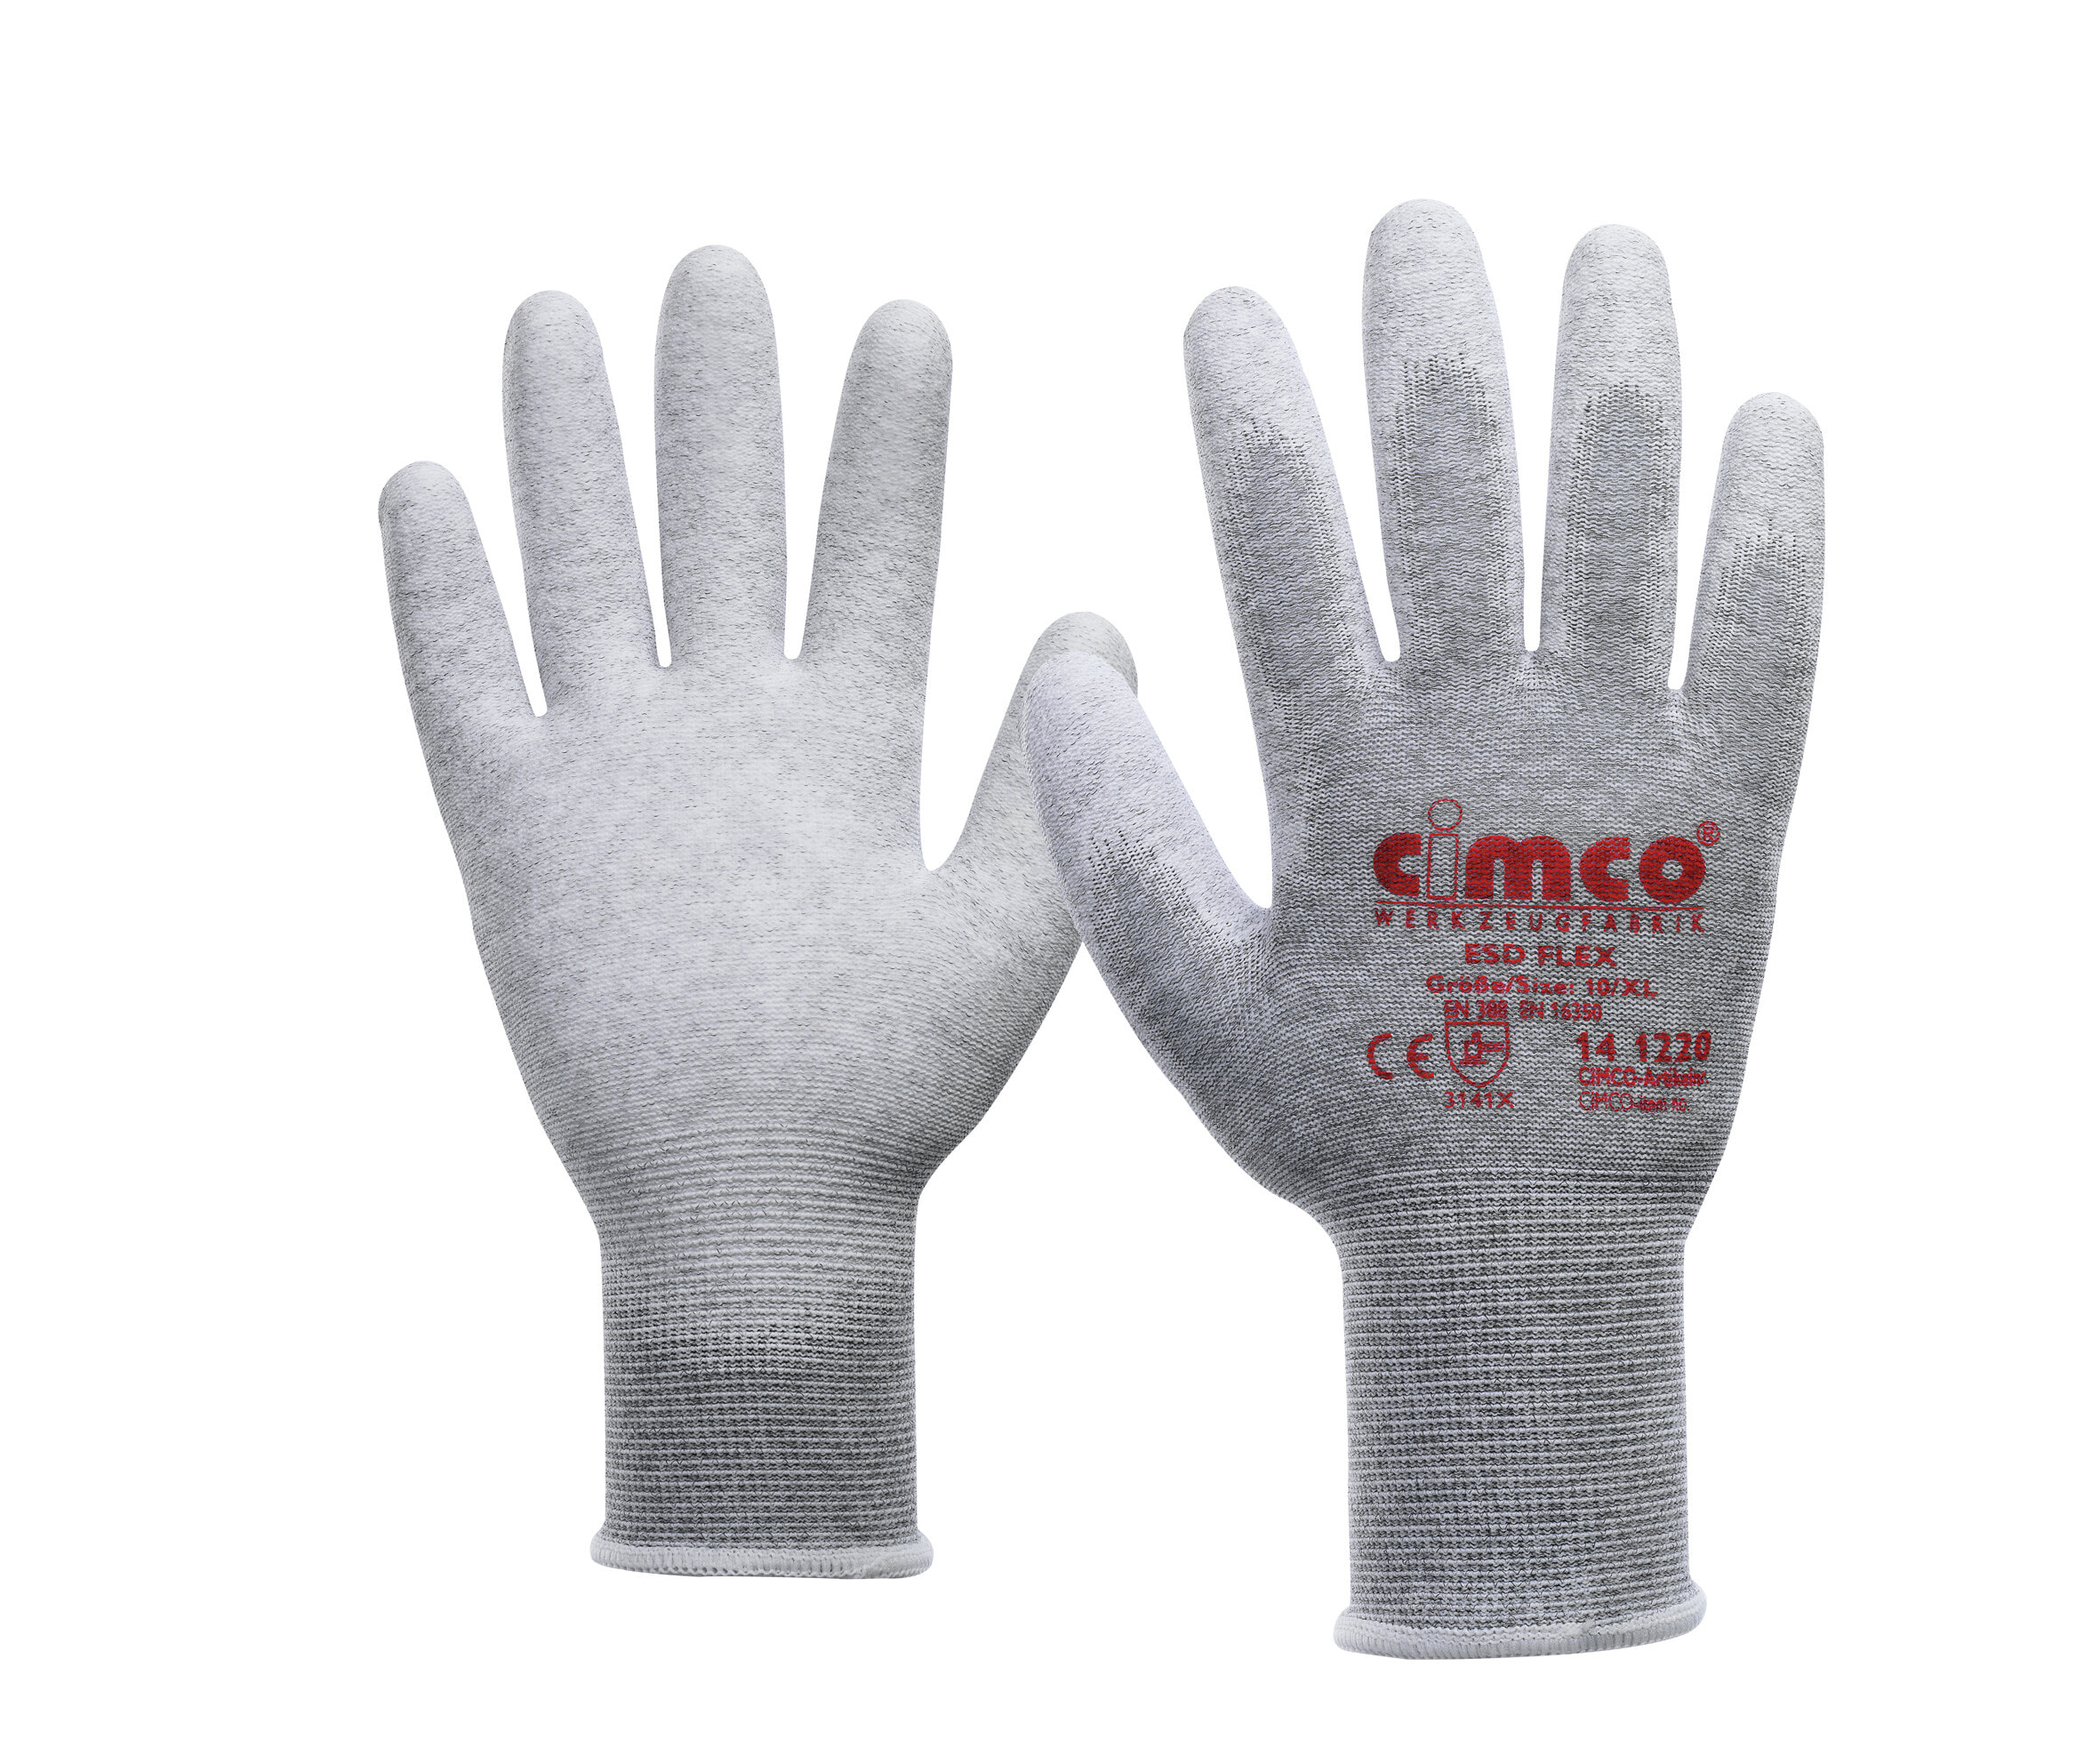 141221 - Workshop gloves - Grey - XXL - EUE - Adult - Unisex